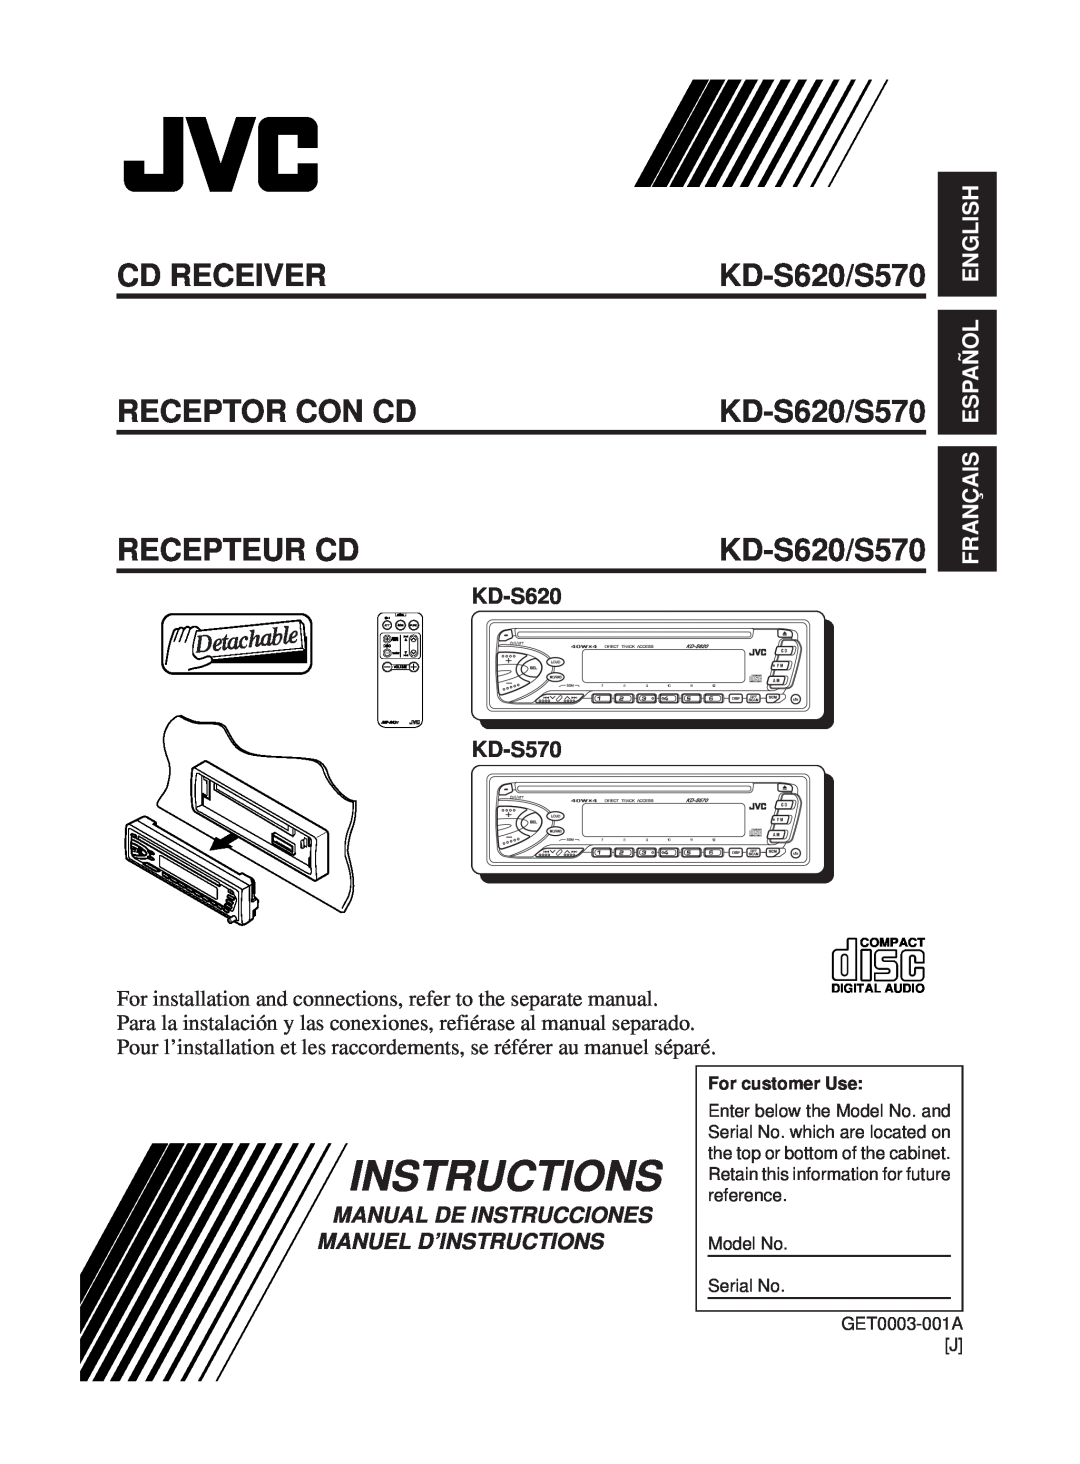 JVC KD-S620 manual KD-S570, Français Español English, Manual De Instrucciones Manuel D’Instructions, Cd Receiver 